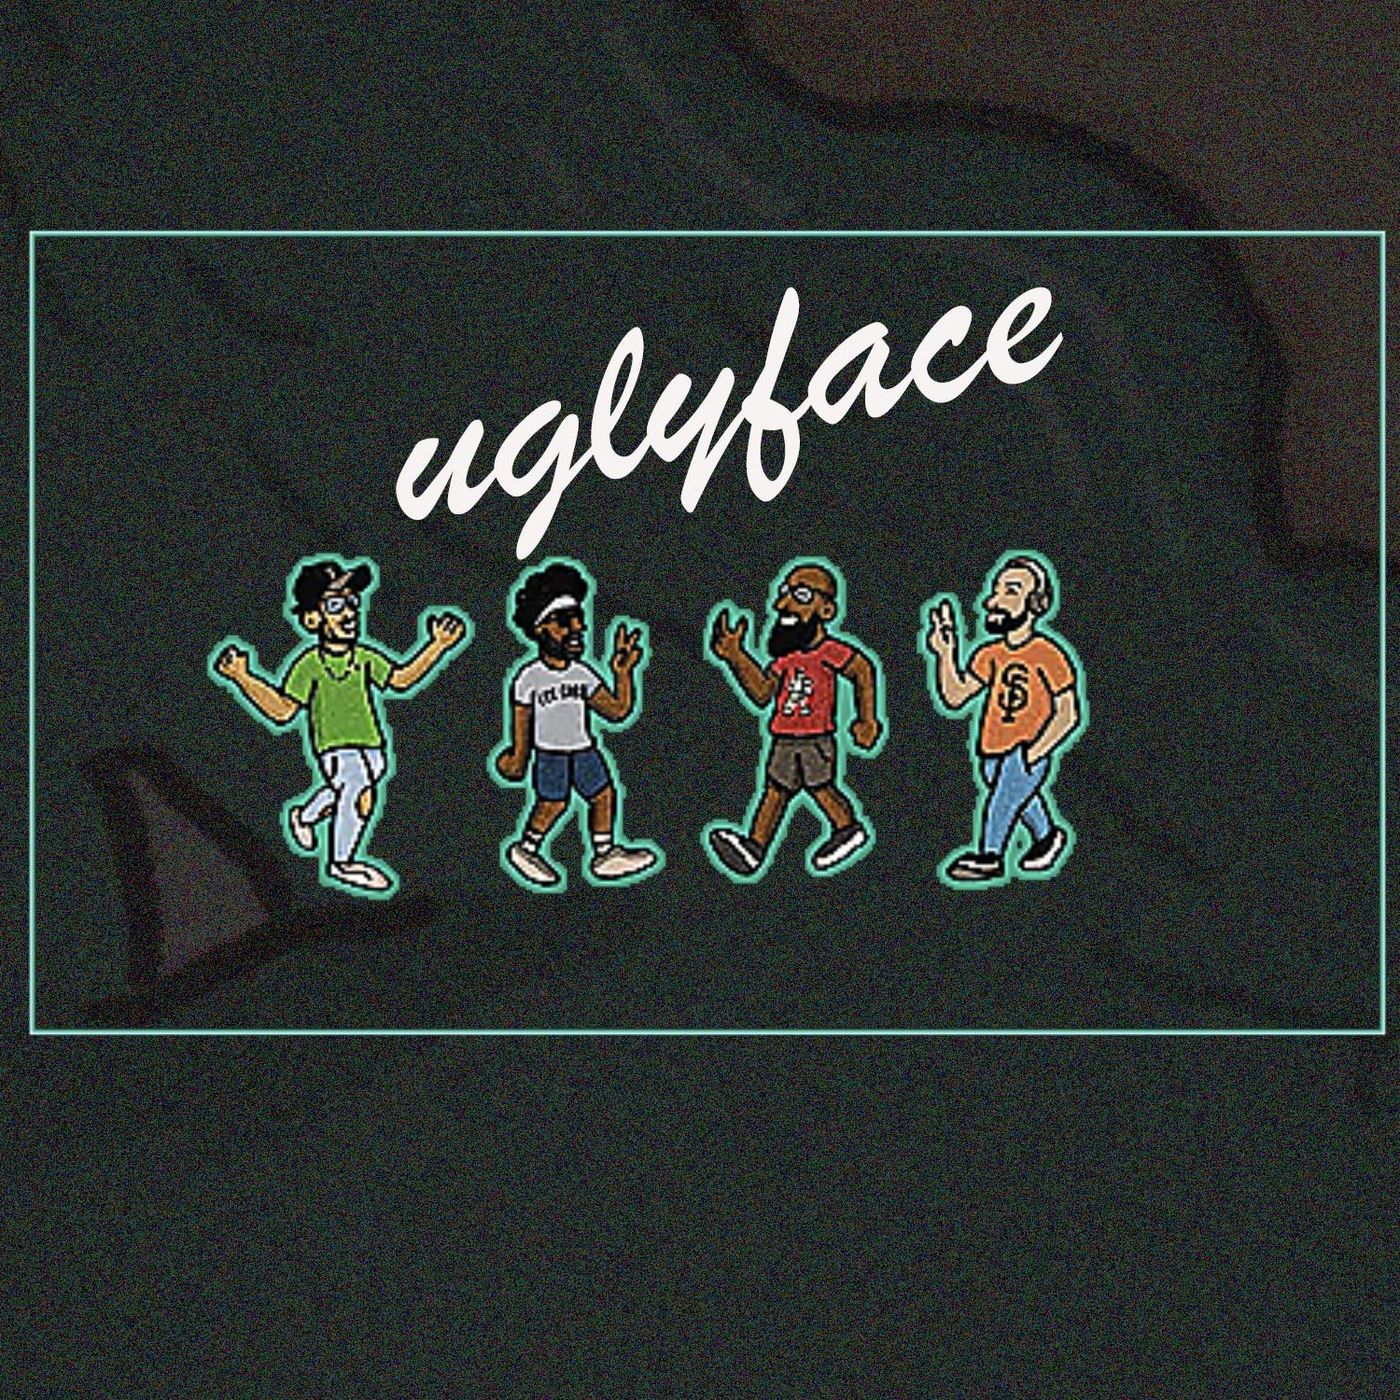 Uglyface Image